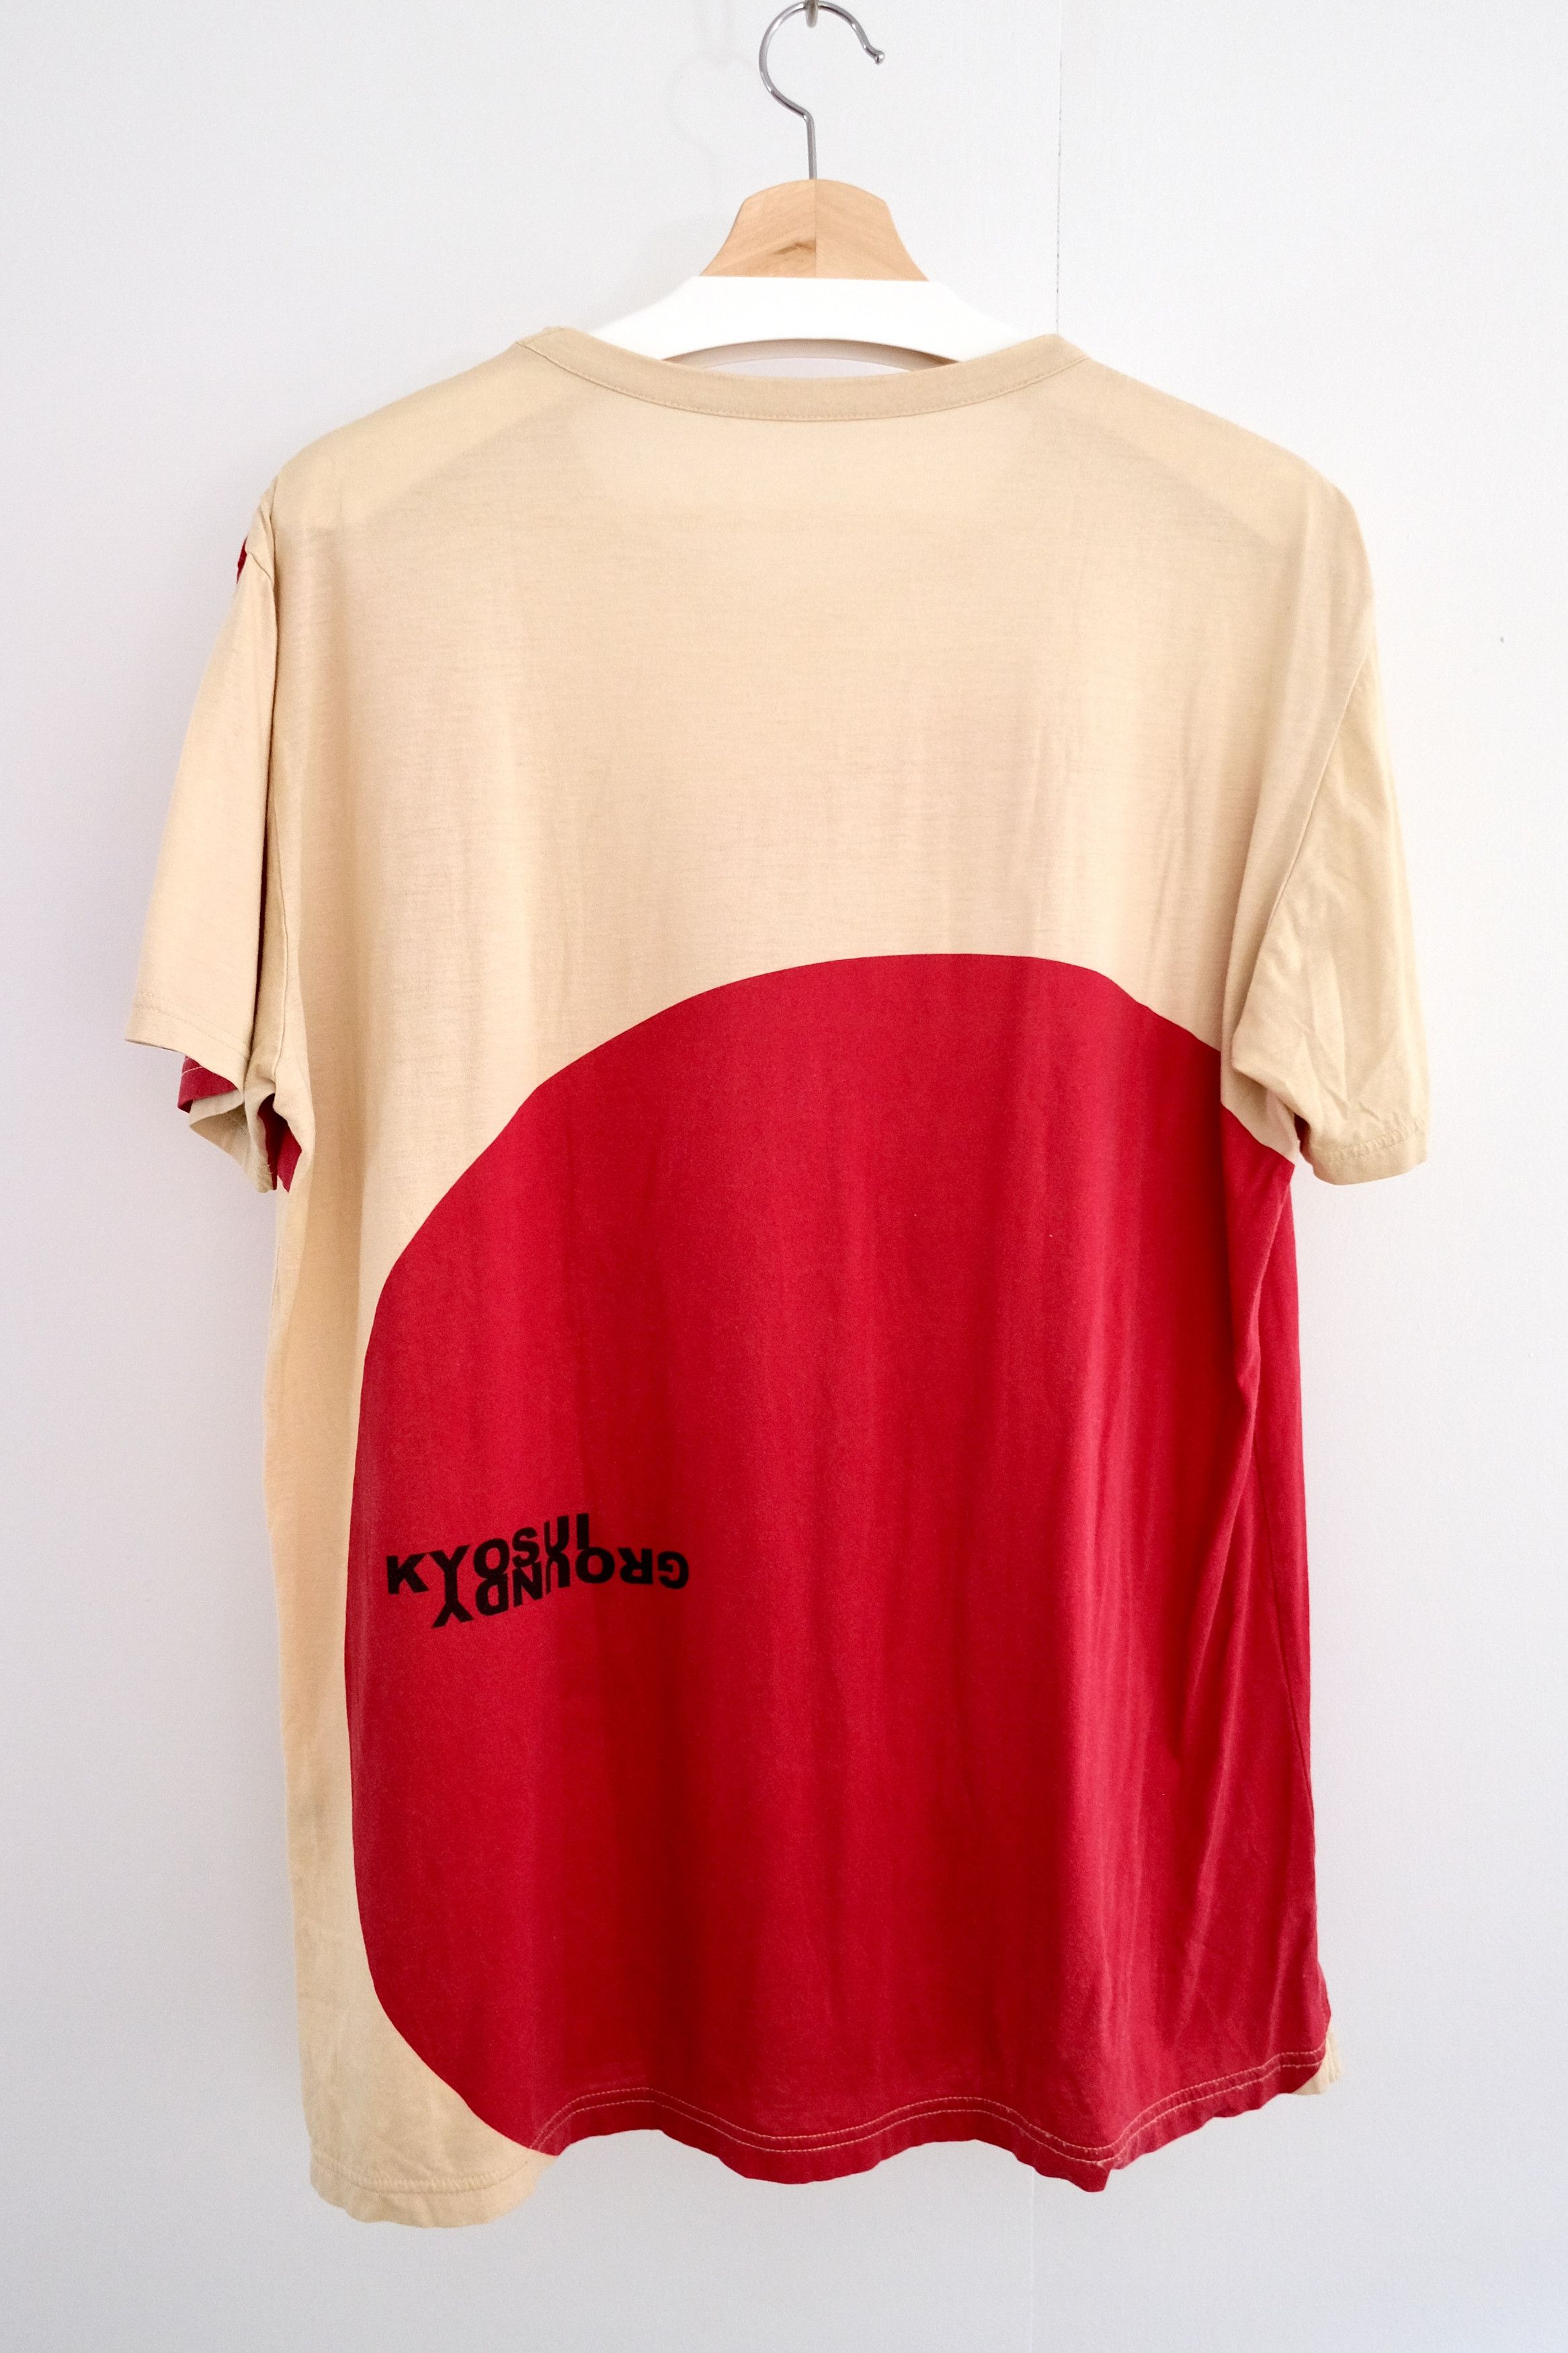 🎐 GY 2020 Kawanabe Ukiyo-e Shirt - 7